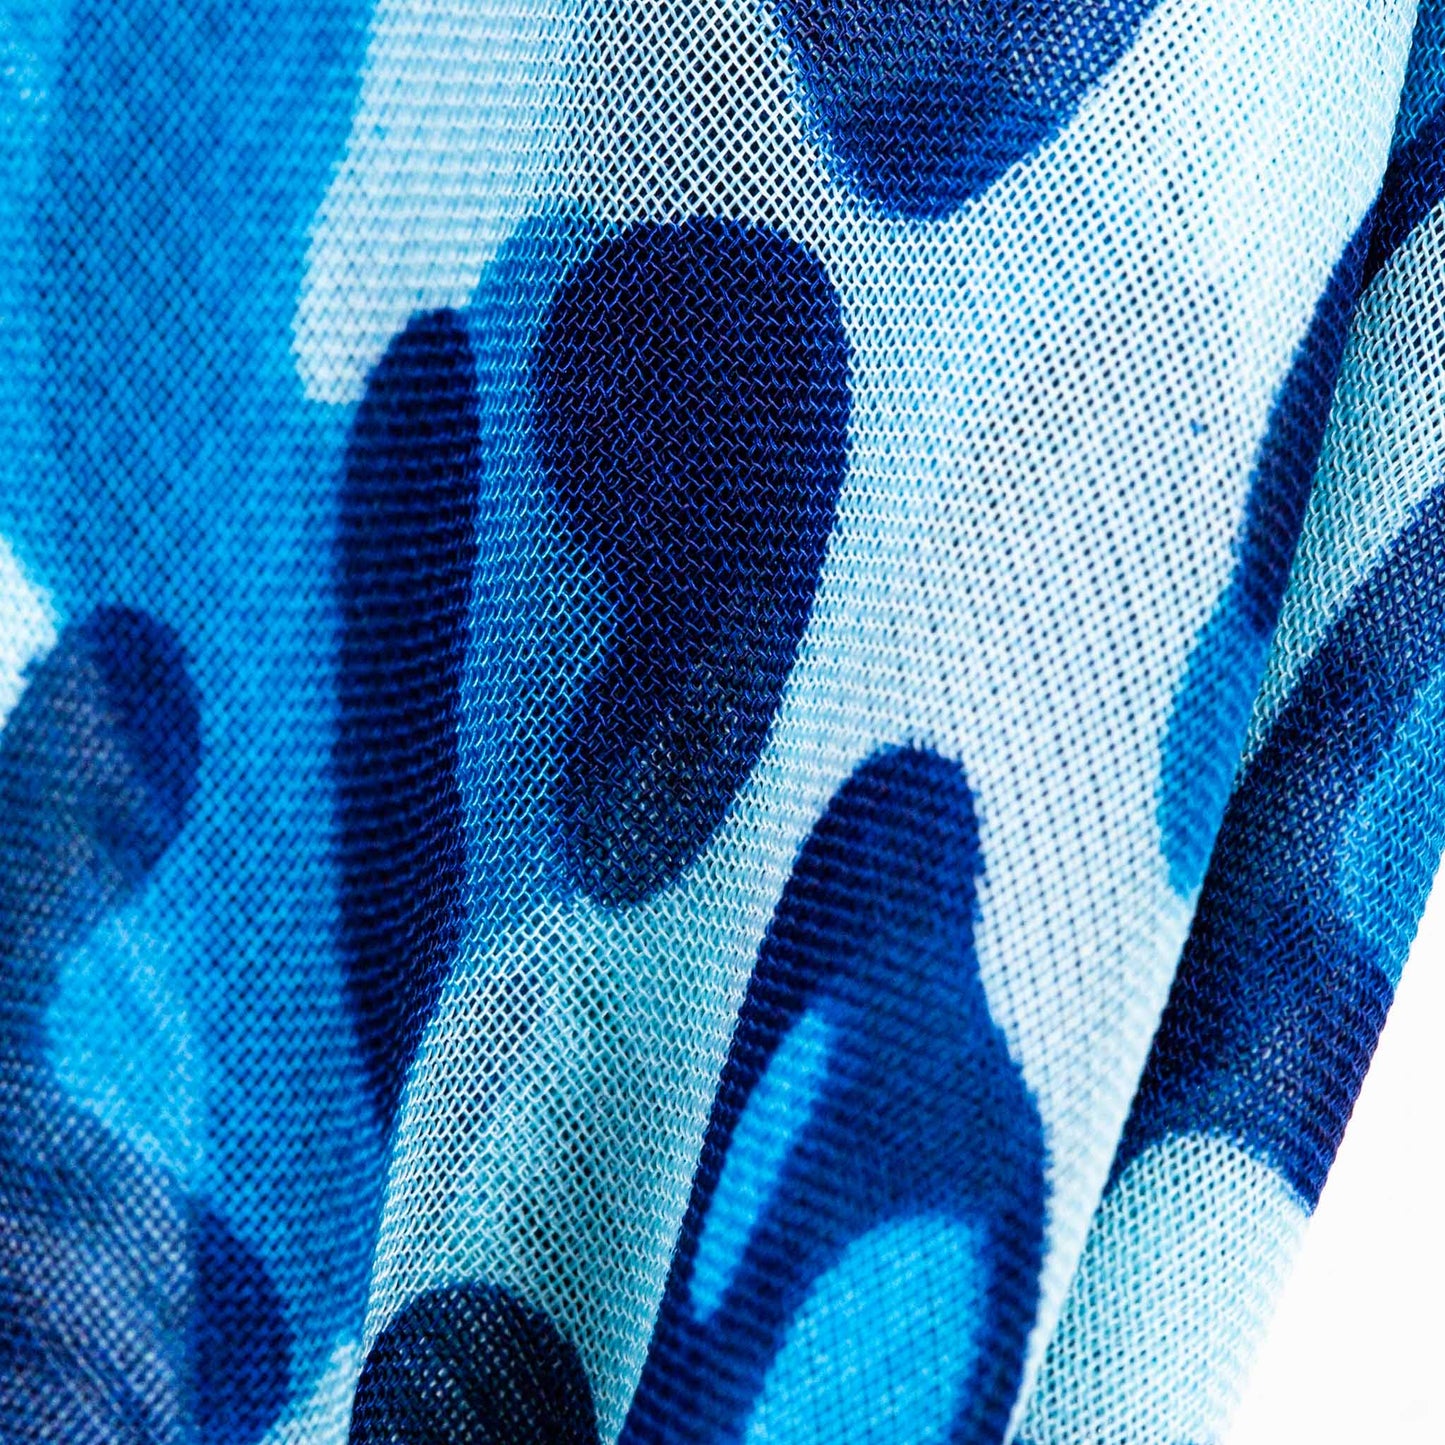 Eșarfă damă din mătase cu animal print și dungi, 65 x 65 cm - Albastru